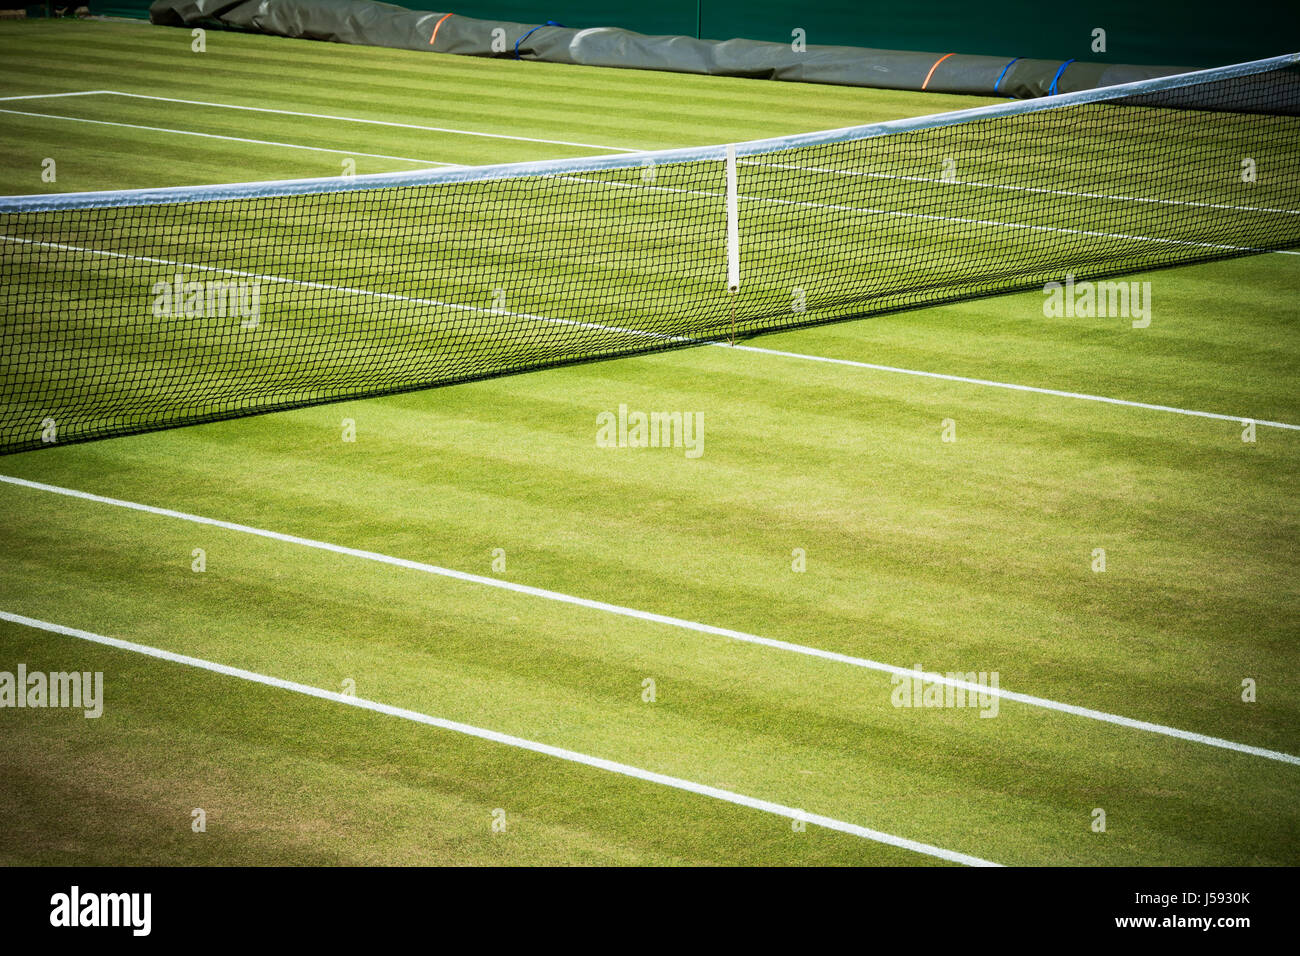 Cancha de tenis y net Foto de stock